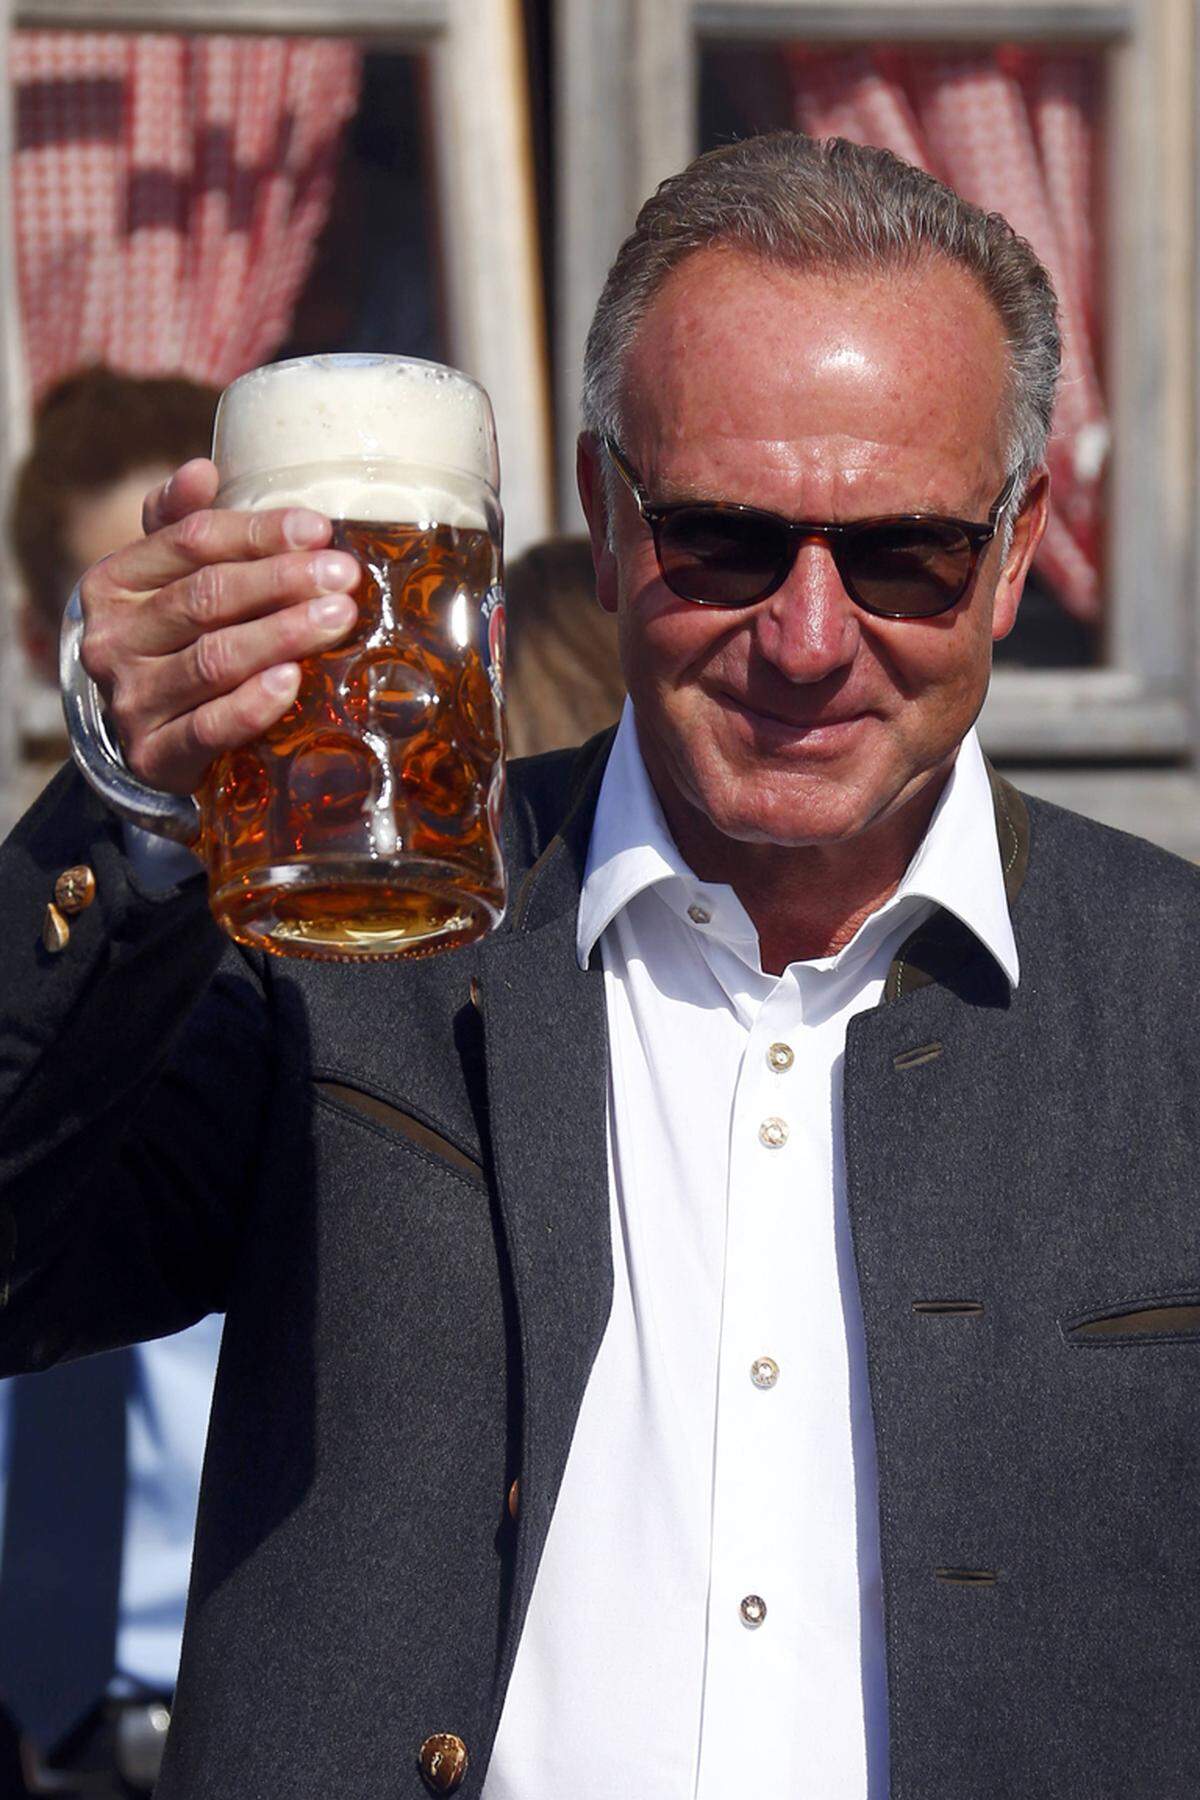 Auch Vorstadsvorsitzender Karl-Heinz Rummenigge zeigte sich bei einem Maß bester Laune.